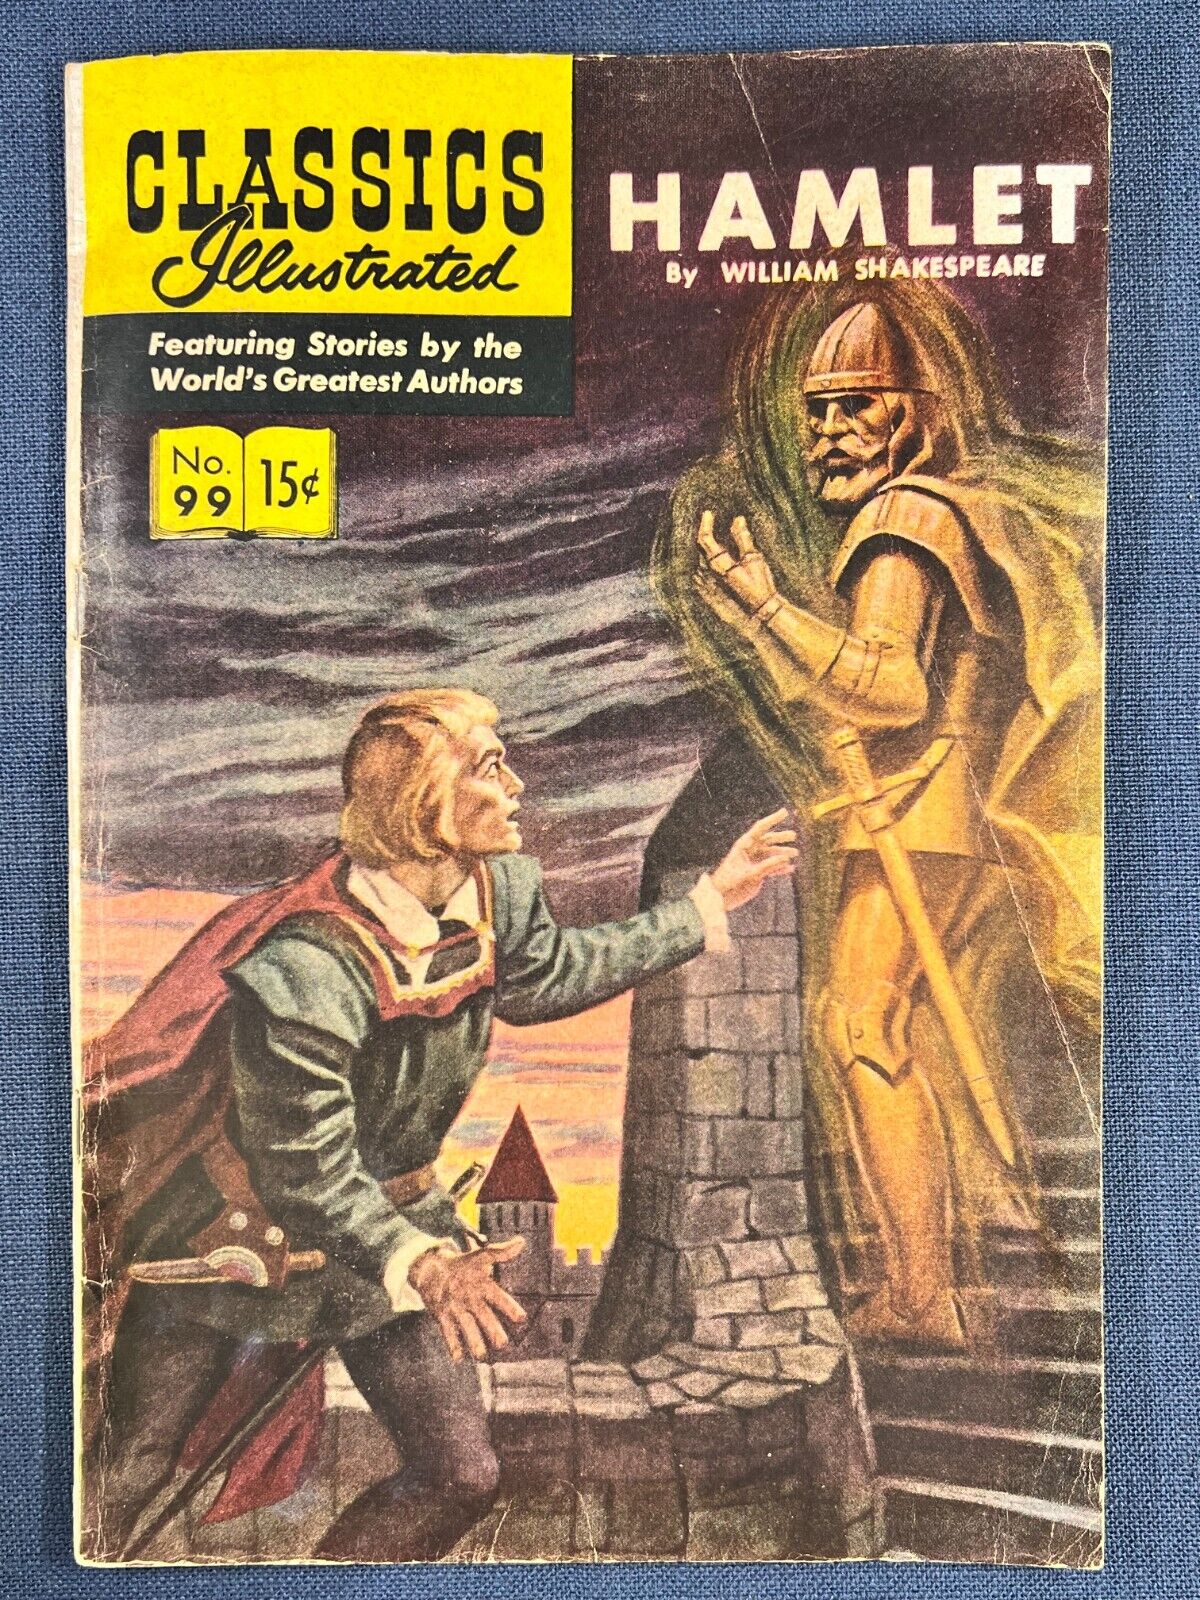 Classics Illustrated #99 Hamlet Comic Book 1952 William Shakespeare